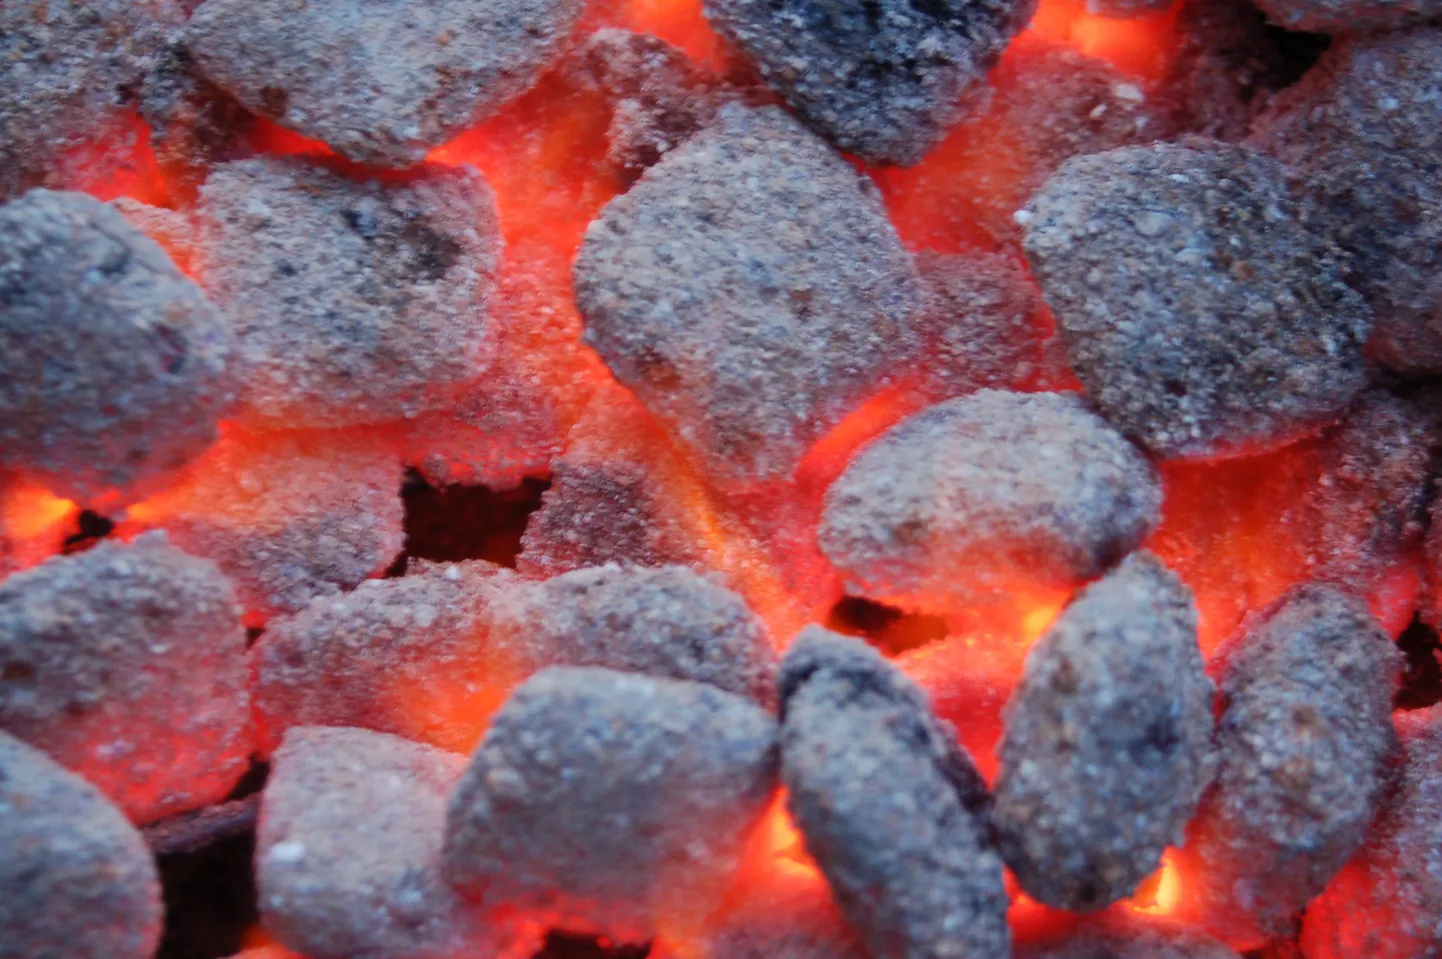 Grillbriketid ehk näide kuidas näeb välja grillimiseks valmis süsi